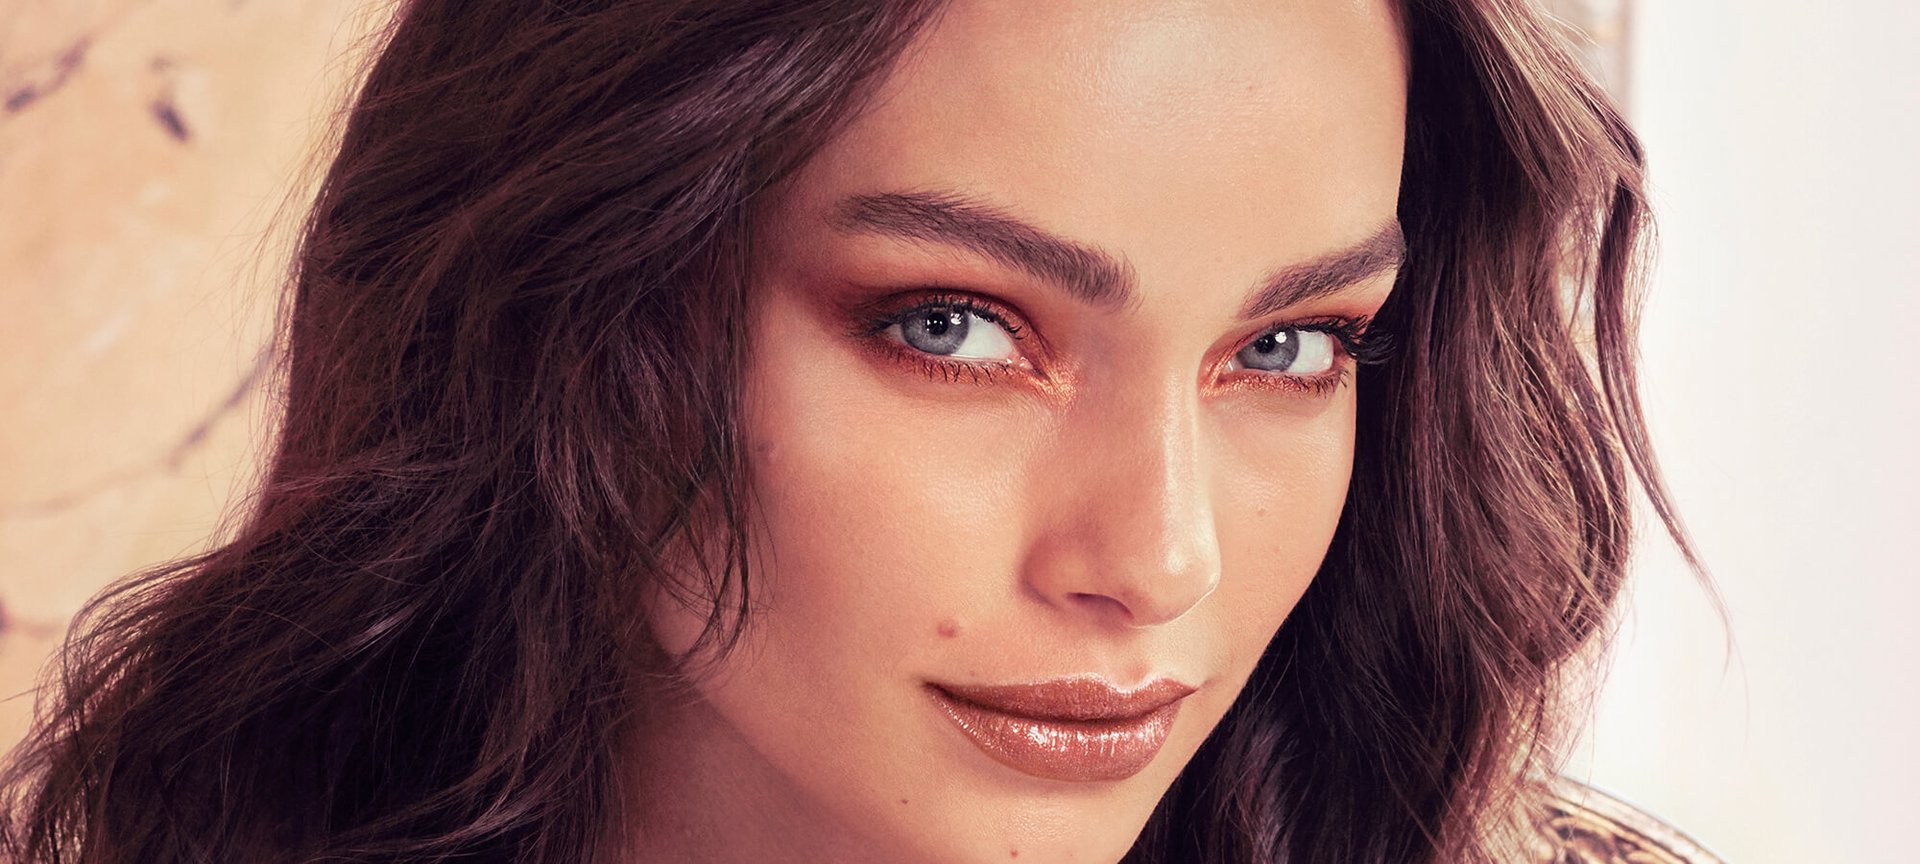 Victor regisseur Goed De 5 beste make-up tips voor vrouwen met blauwe ogen | L'Oréal Paris